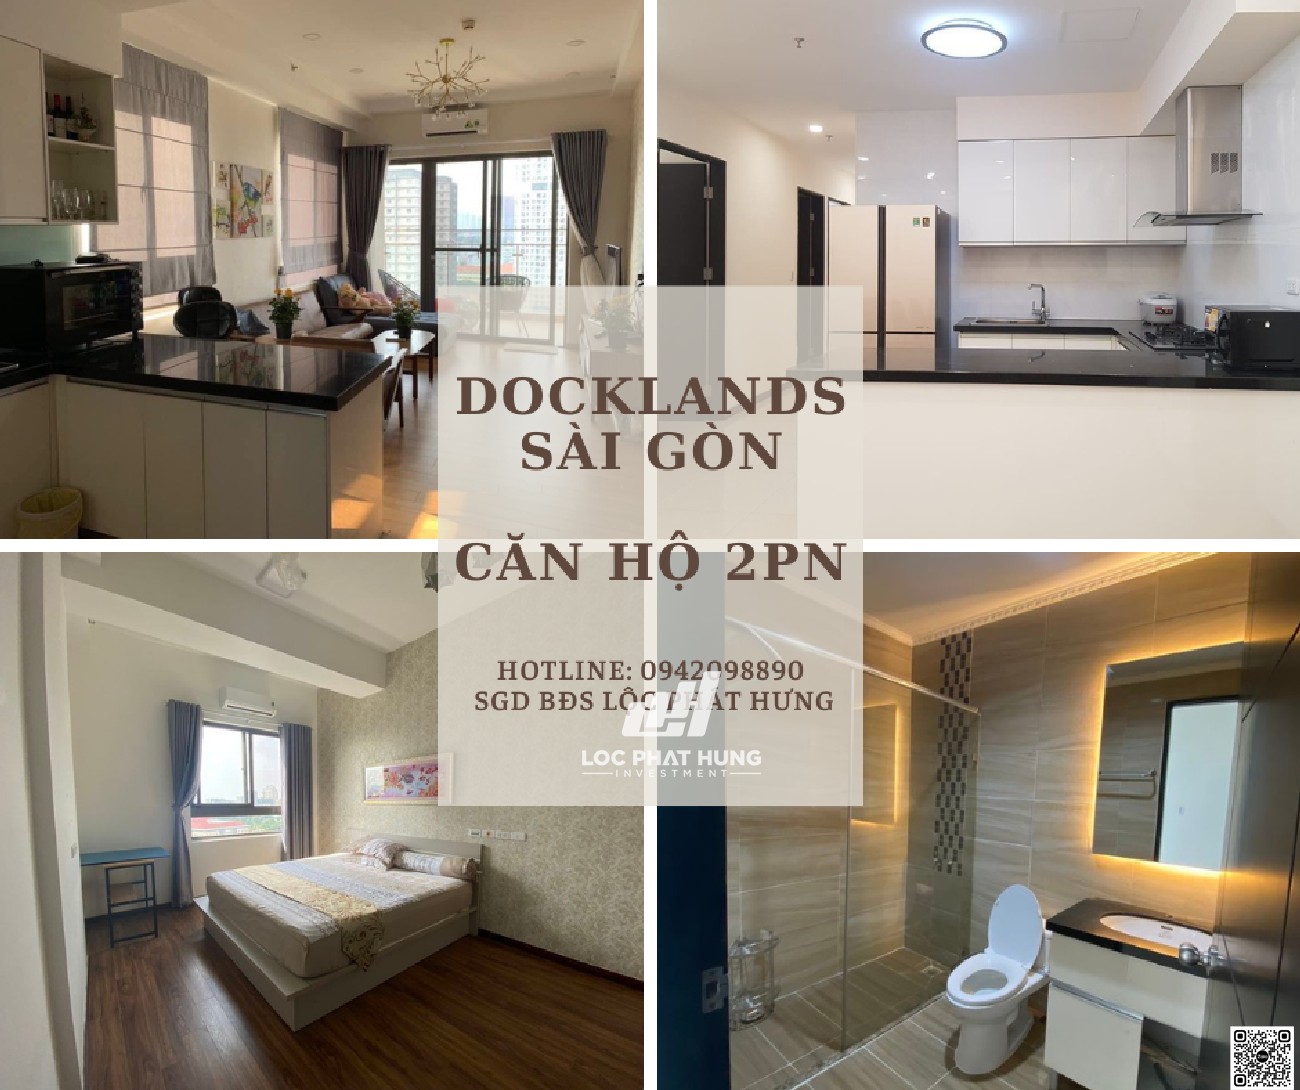 Hình ảnh thực tế căn hộ dự án Docklands Sài Gòn Quận 7